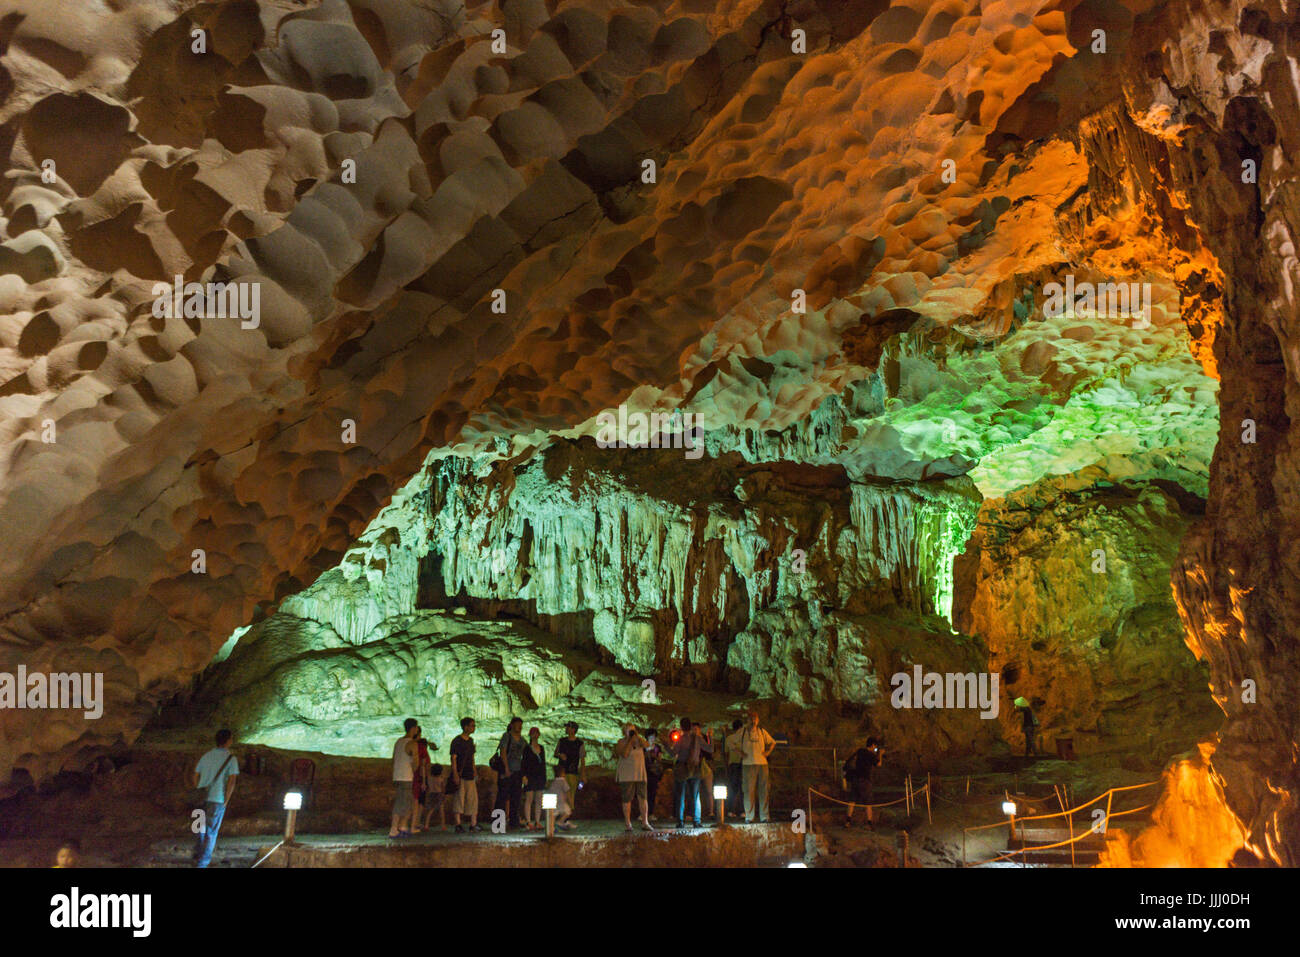 Vue panoramique de la grande grotte de la Baie d'Halong au Vietnam. Banque D'Images